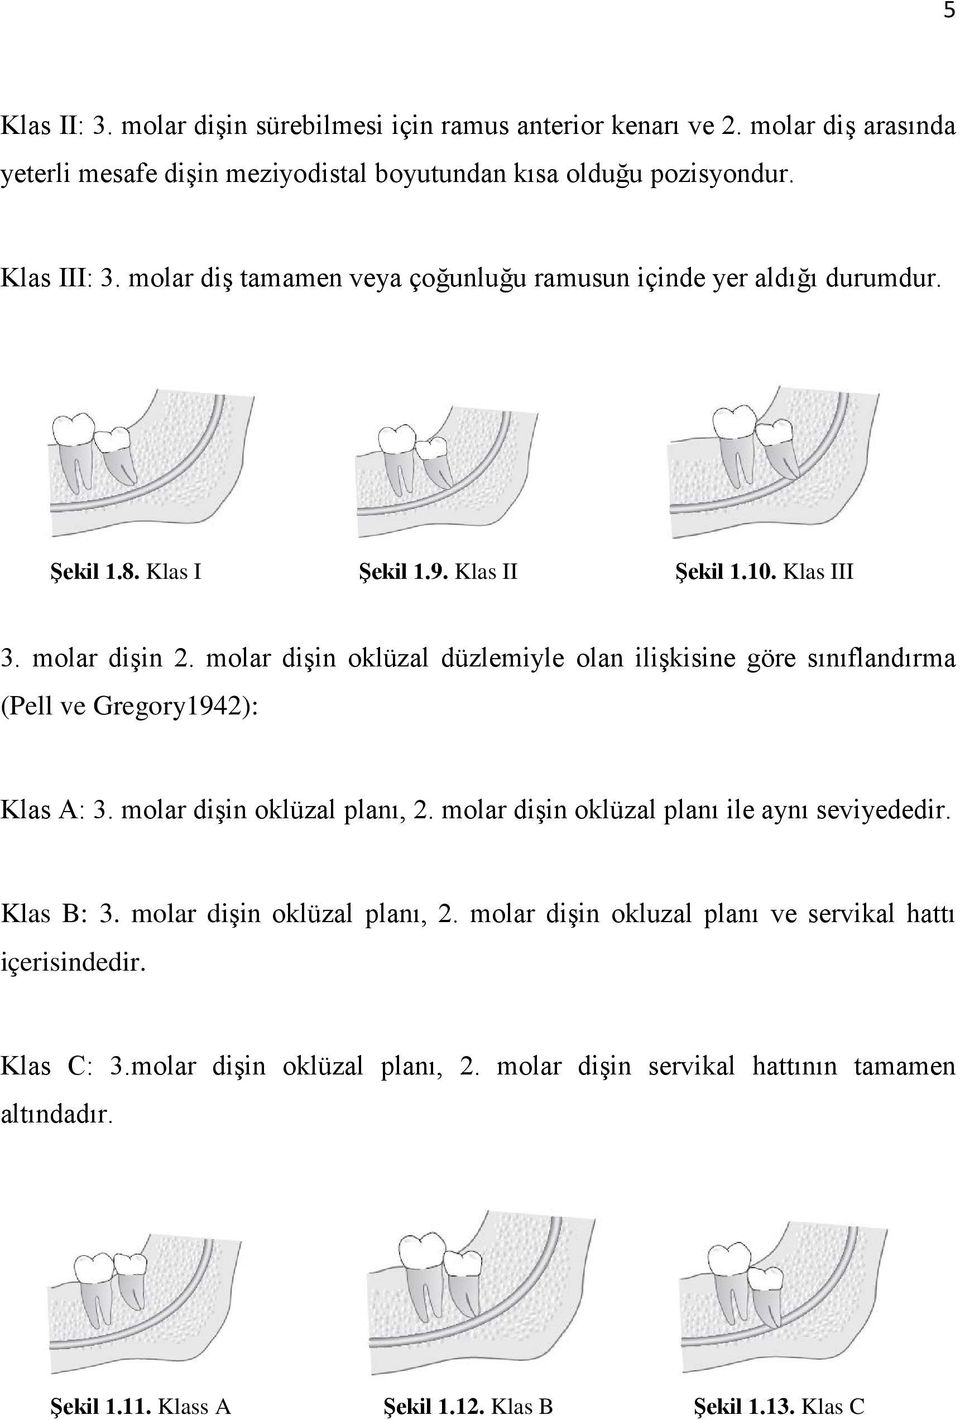 molar dişin oklüzal düzlemiyle olan ilişkisine göre sınıflandırma (Pell ve Gregory1942): Klas A: 3. molar dişin oklüzal planı, 2. molar dişin oklüzal planı ile aynı seviyededir.